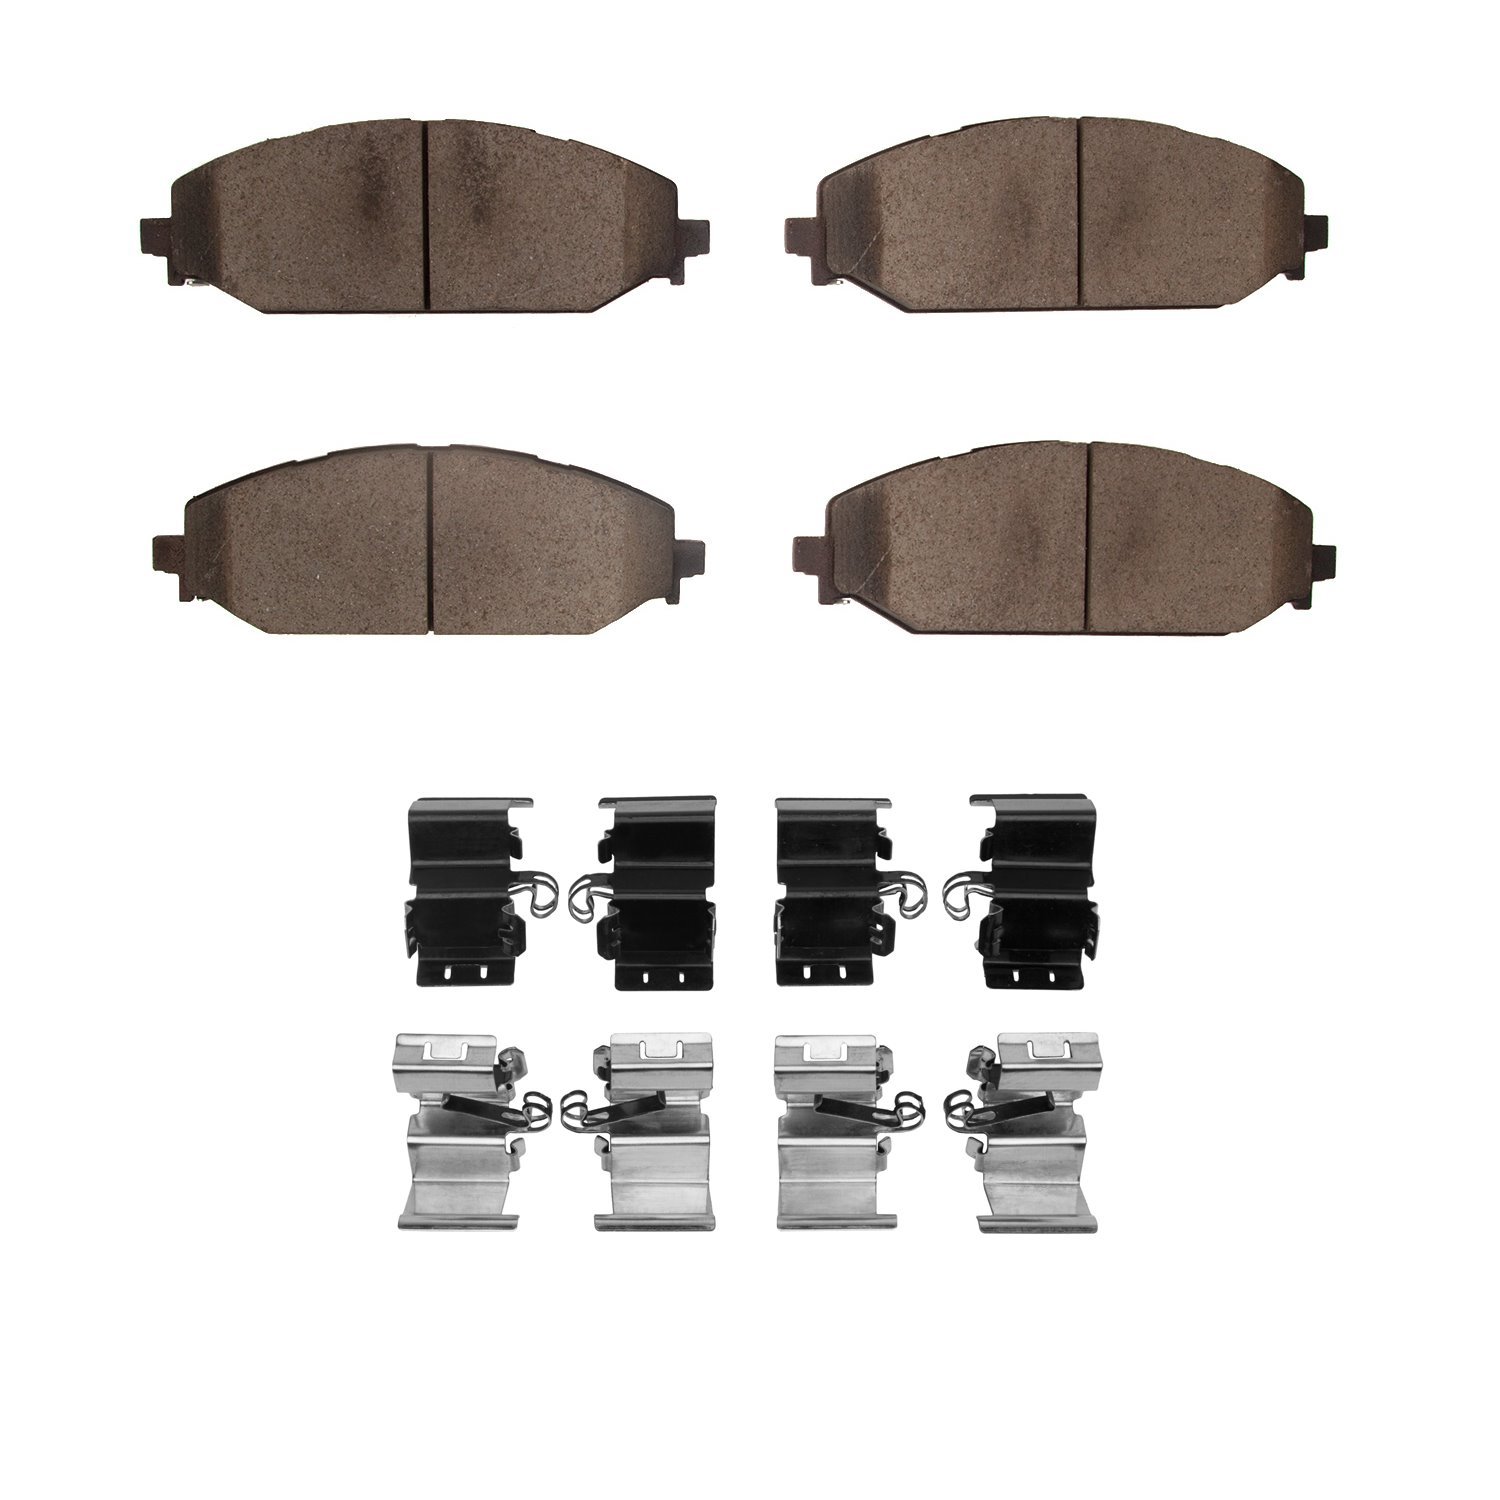 Ceramic Brake Pads & Hardware Kit, Fits Select Mopar, Position: Front